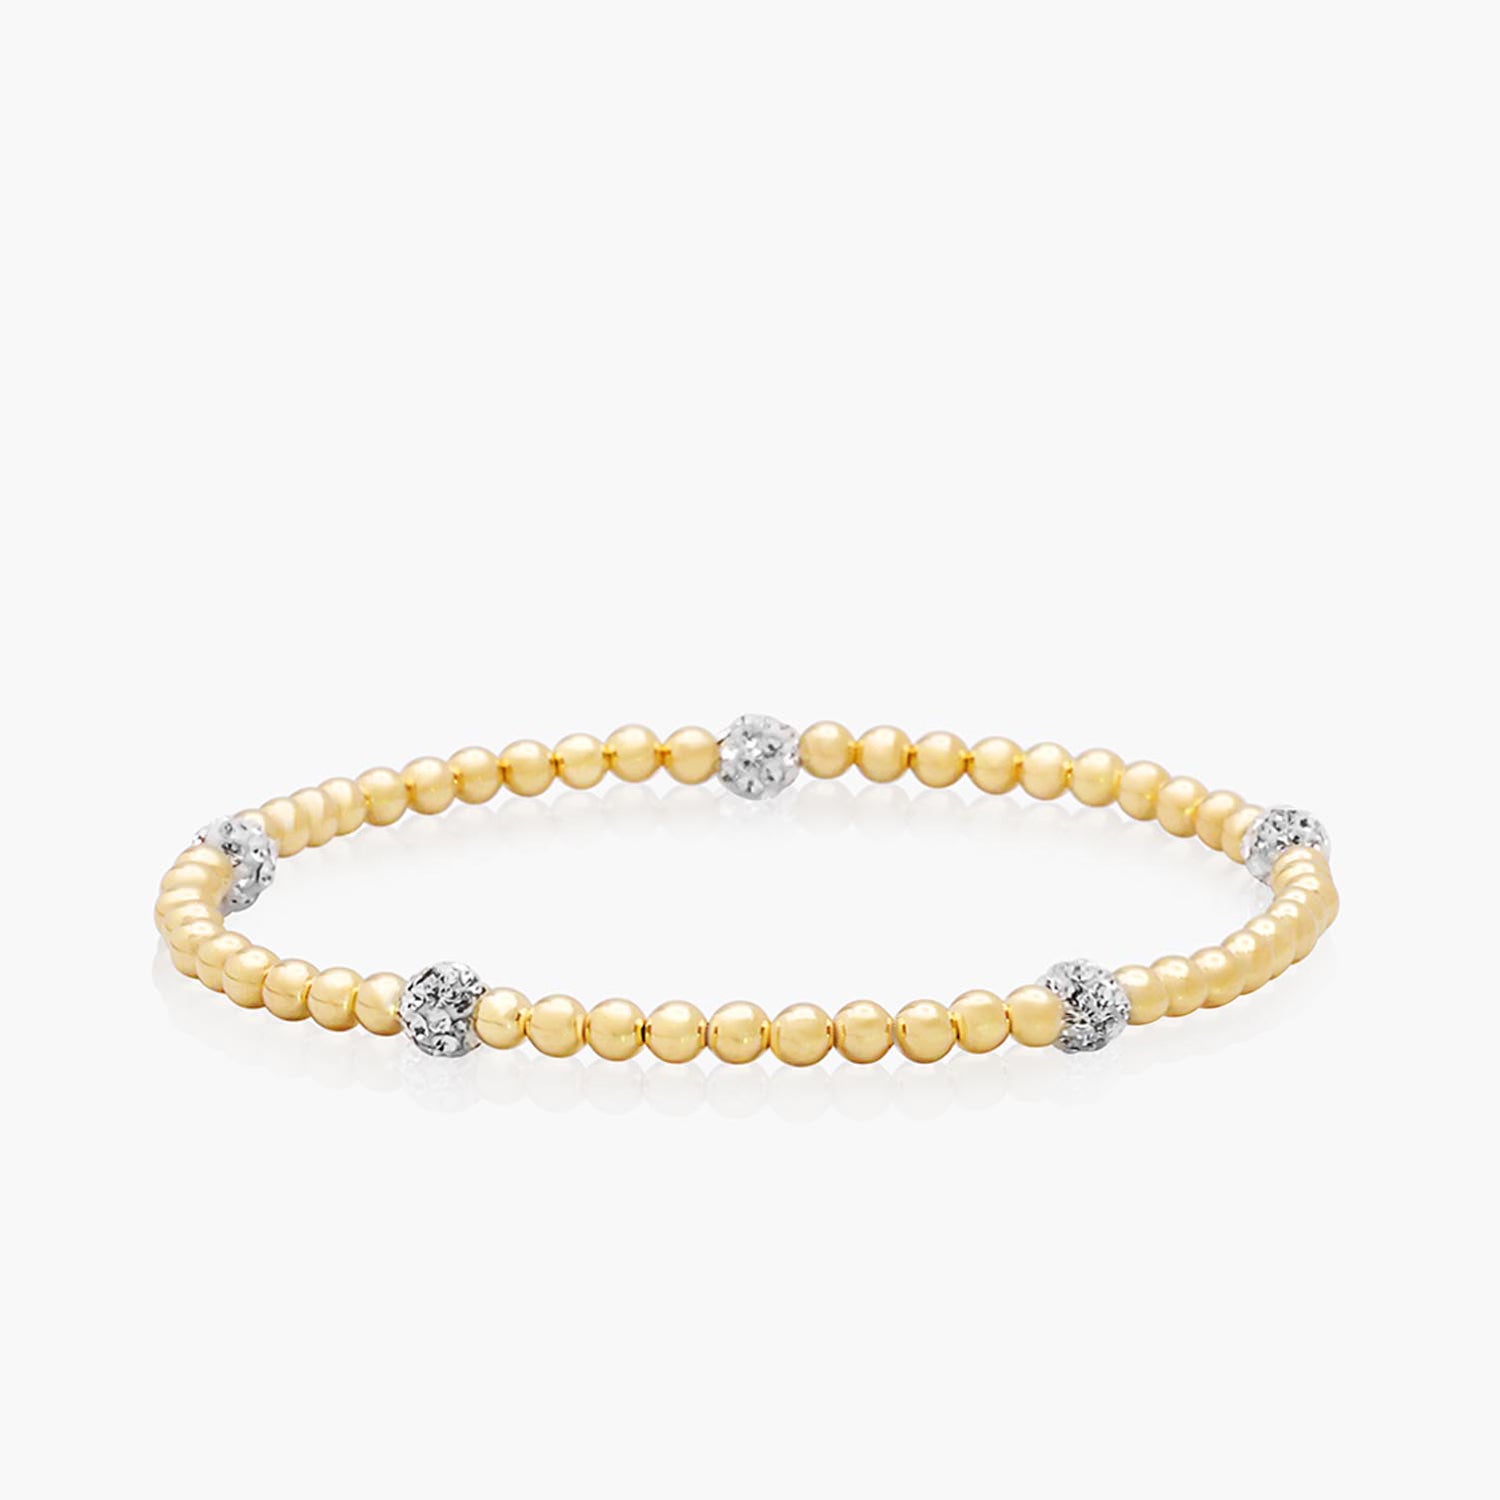 Playa Luna Jewelry Gold Filled Bead Bracelet with Gems Zoe